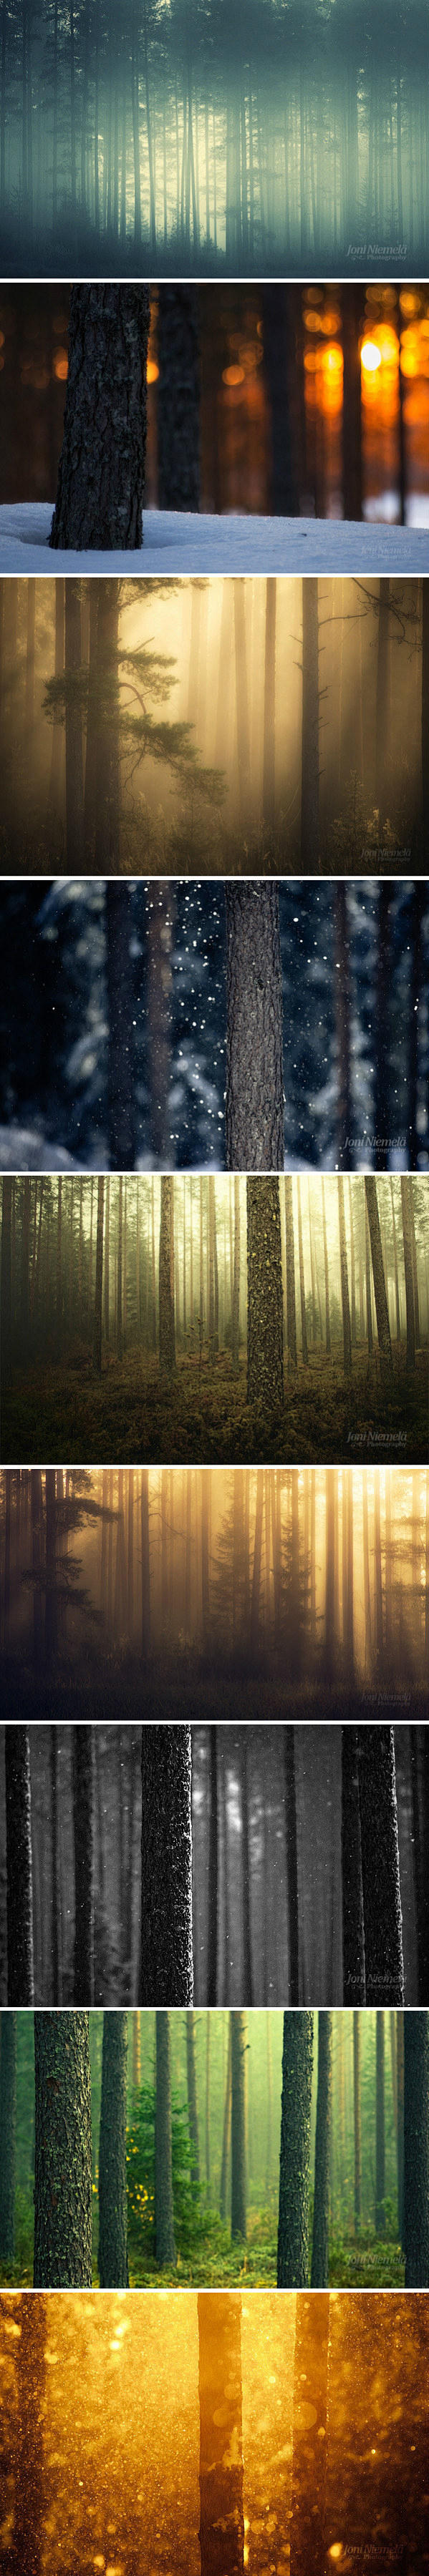 每一个人都有属于自己的一片森林。摄影：J...